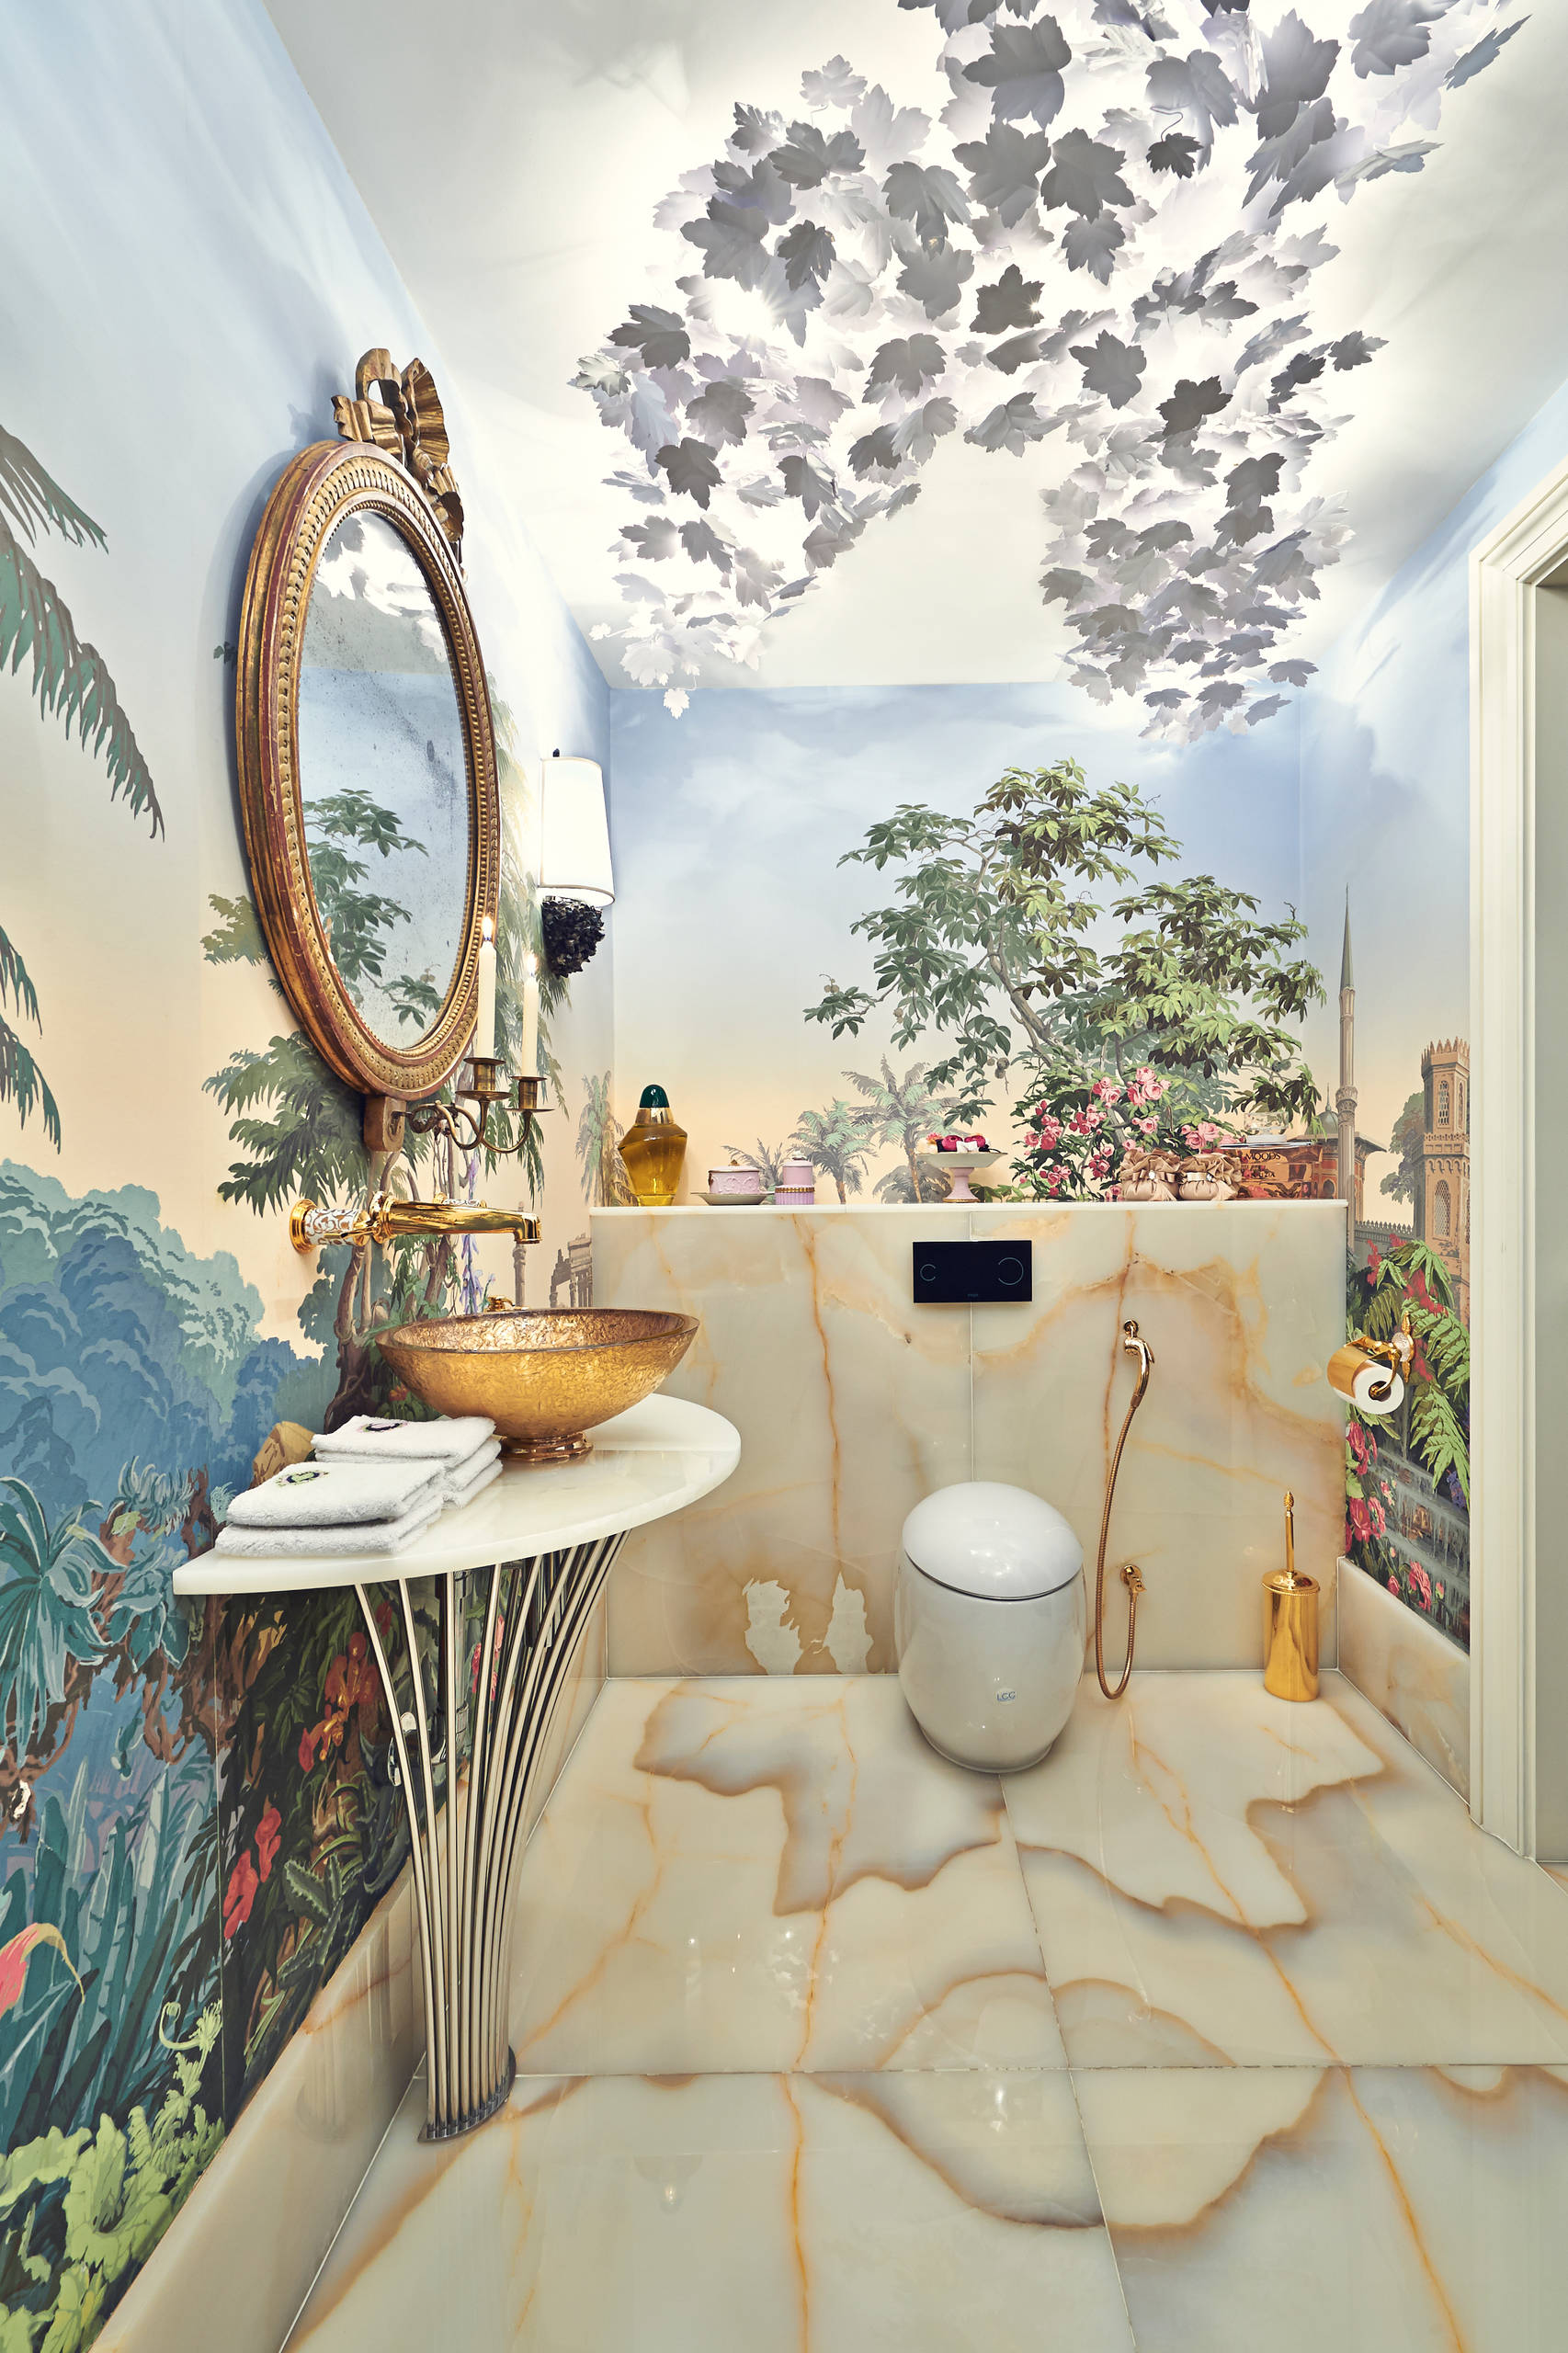 Bathroom Mural - Photos & Ideas | Houzz